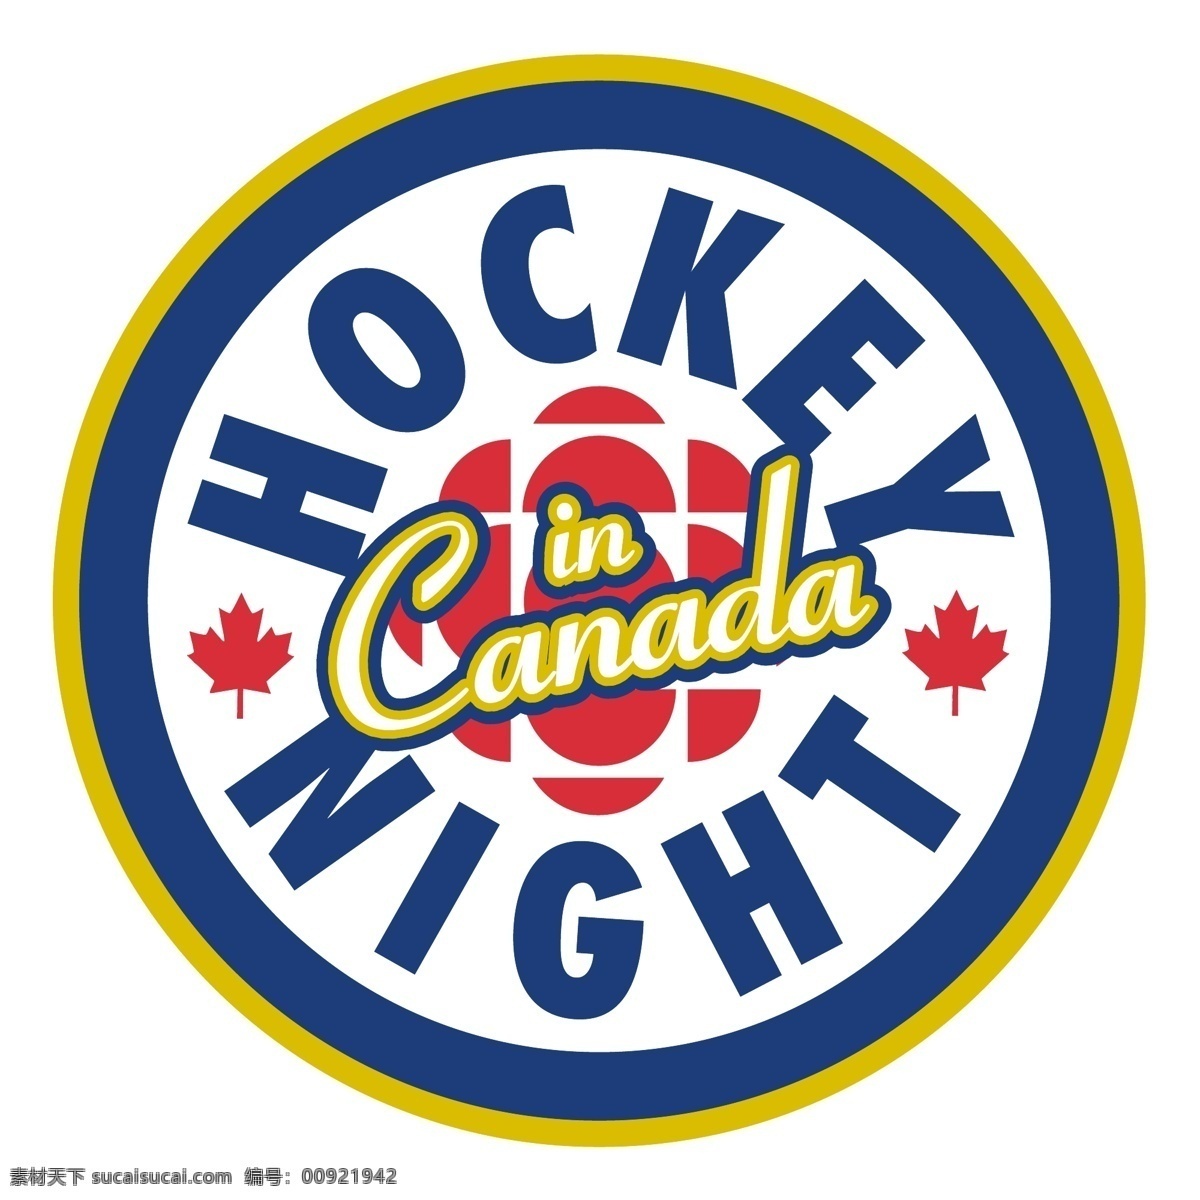 加拿大 曲棍球 夜 冰球 夜加拿大 矢量 标志 向量 向量的加拿大